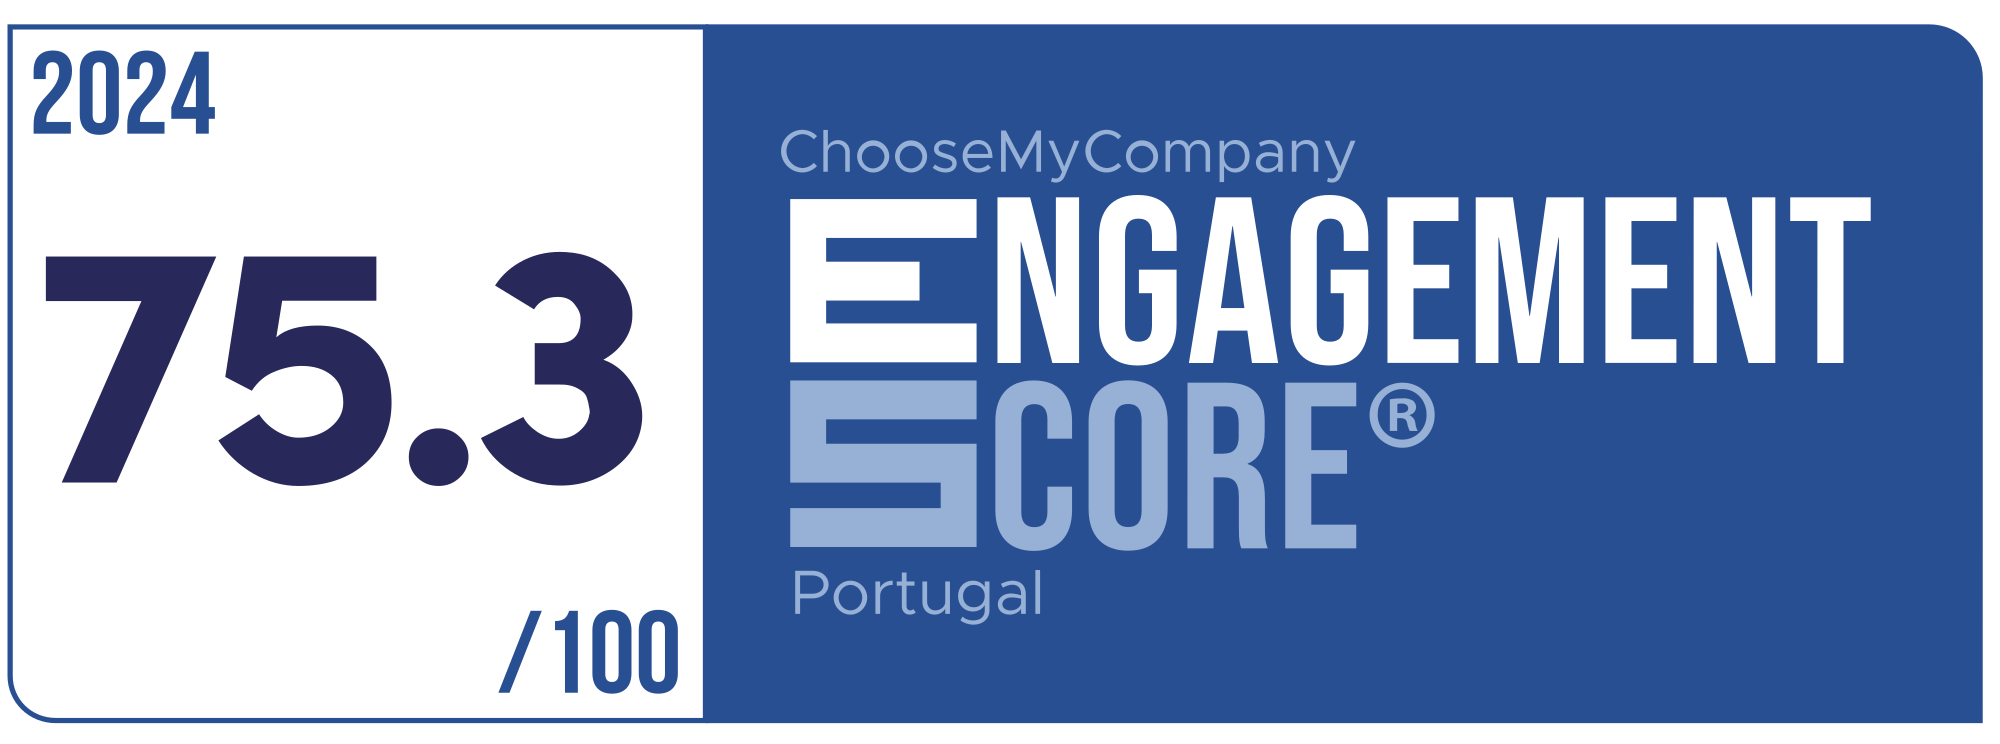 Label Engagement Score 2024 Portugal